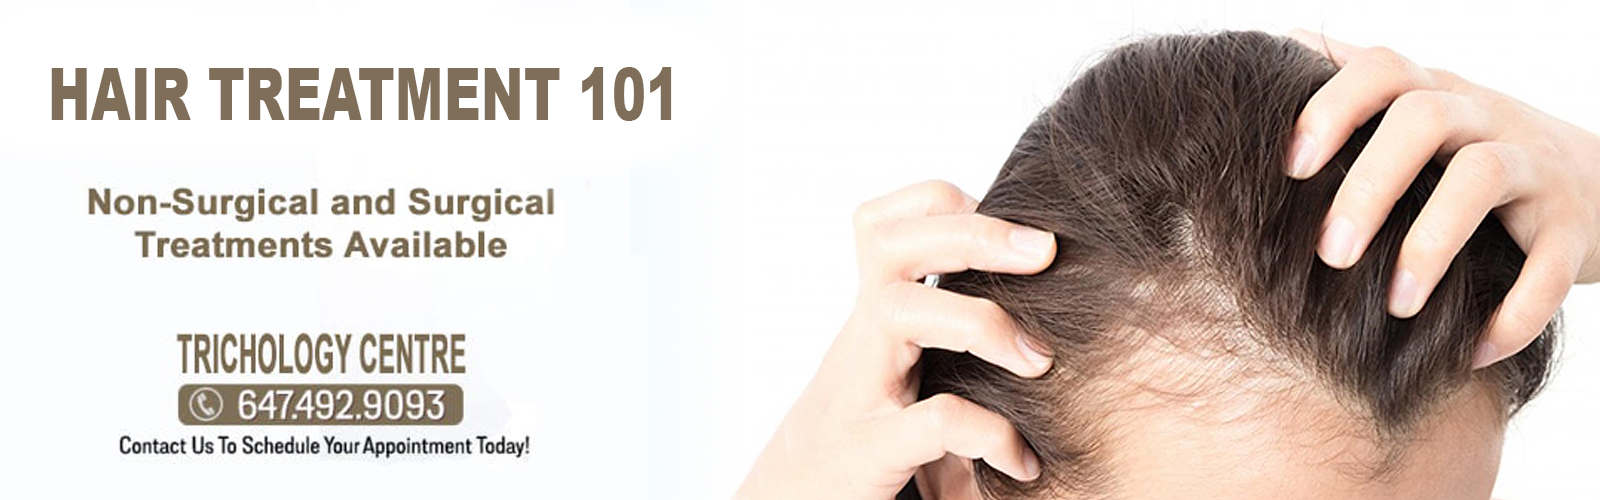 hair-treatment-101 - androgenetic alopecia